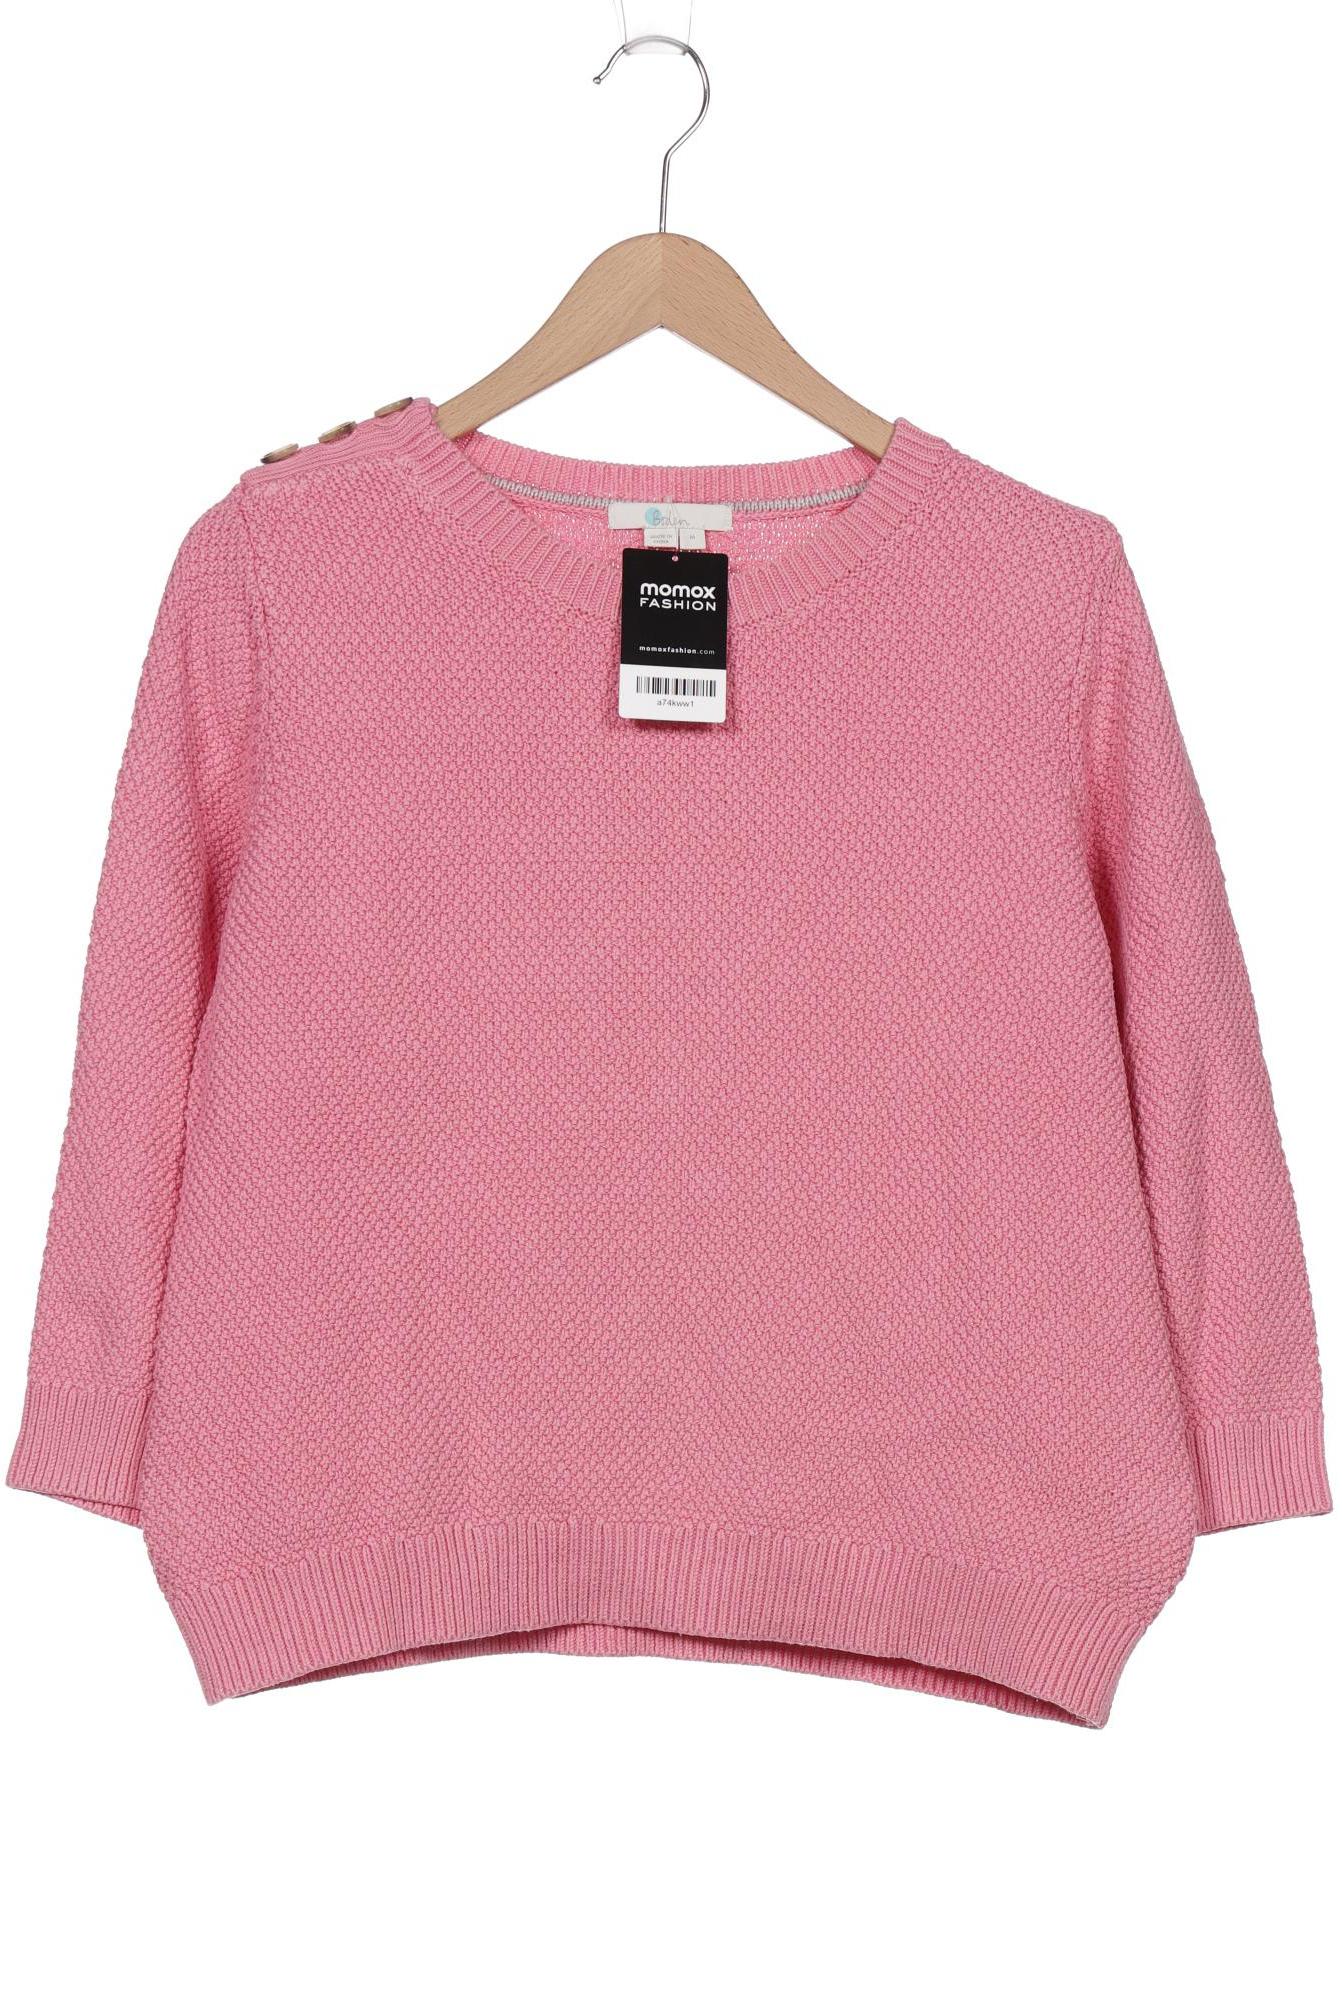 Boden Damen Pullover, pink, Gr. 38 von Boden